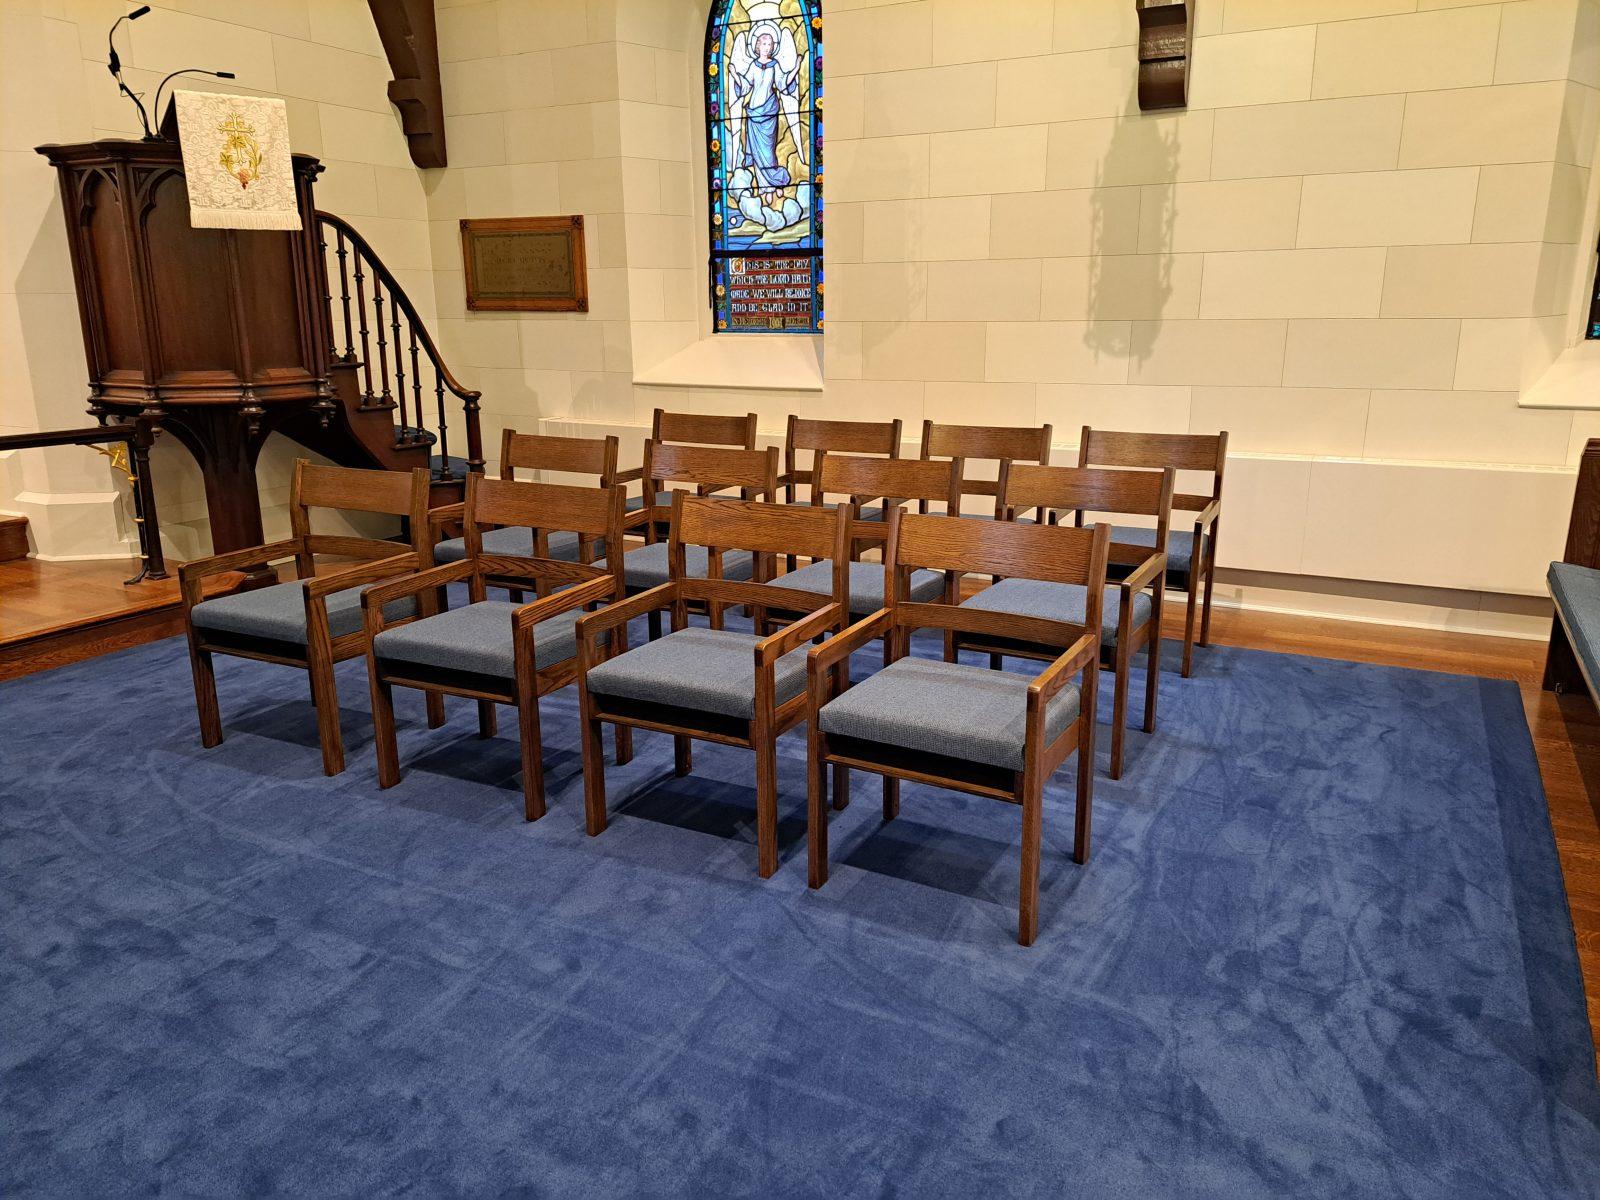 chapel chairs, church chairs, wood church chairs, church furniture